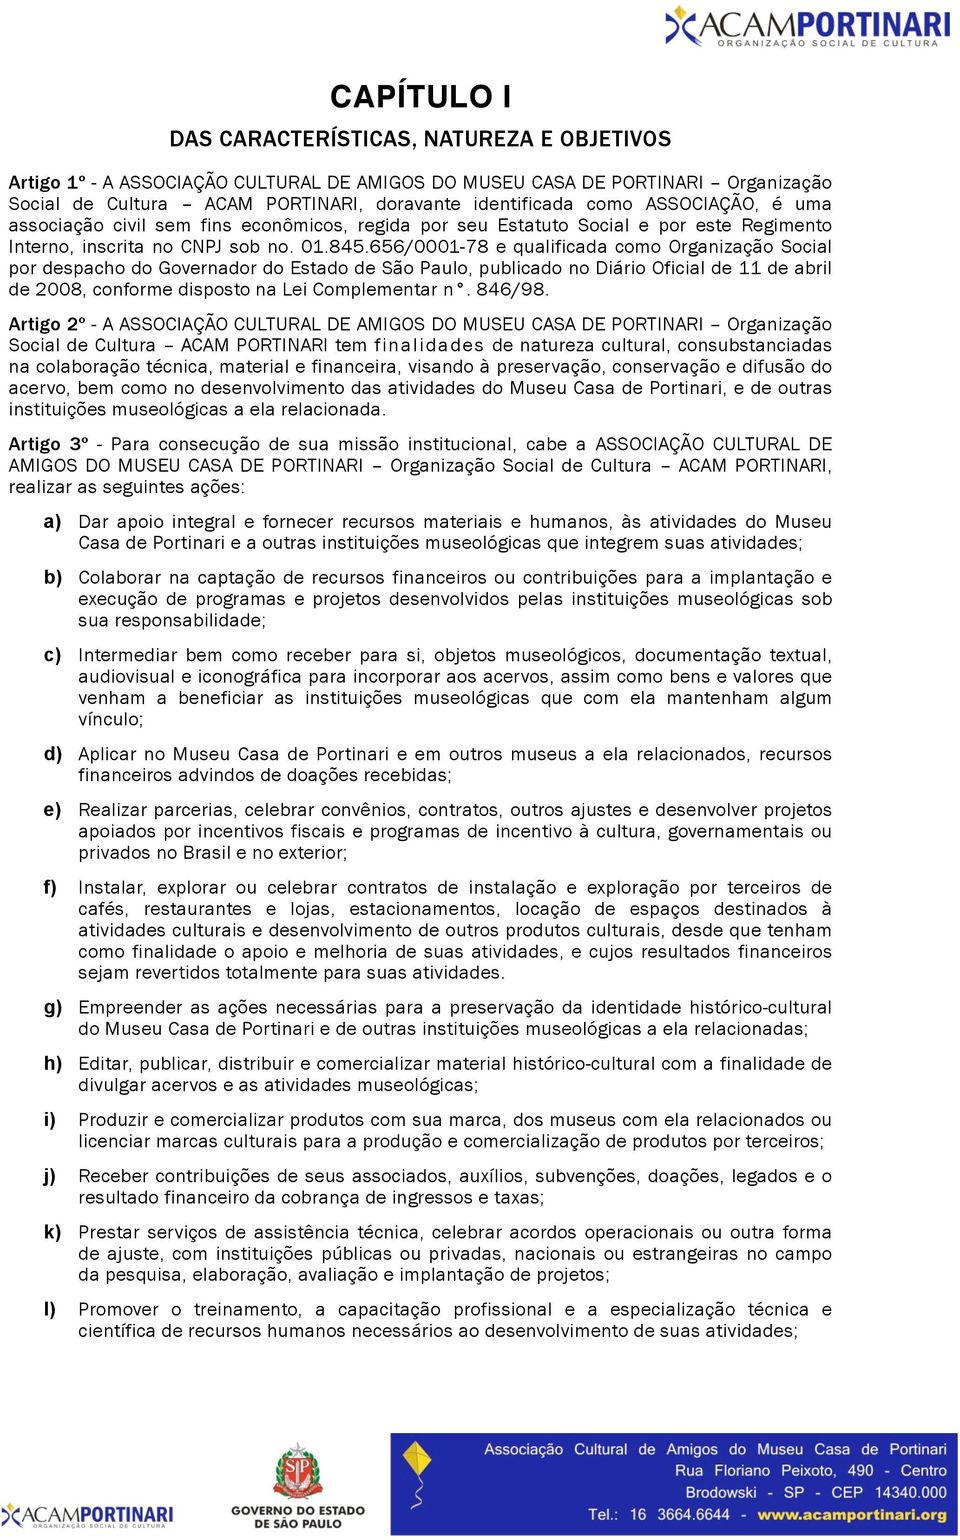 656/0001-78 e qualificada como Organização Social por despacho do Governador do Estado de São Paulo, publicado no Diário Oficial de 11 de abril de 2008, conforme disposto na Lei Complementar n.